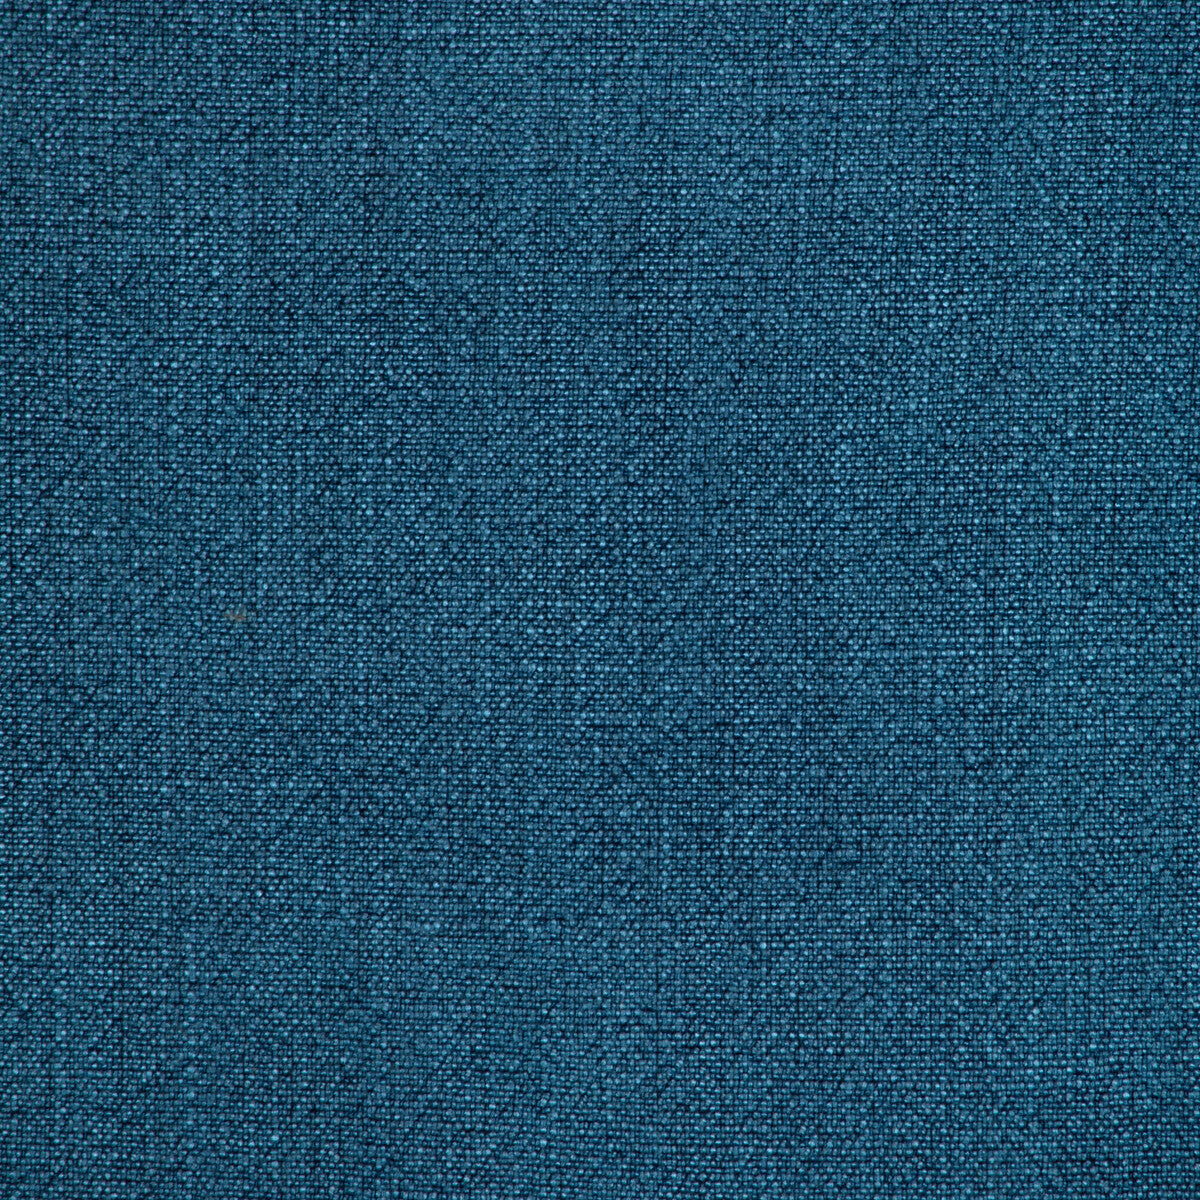 Kravet Basics fabric in 35189-550 color - pattern 35189.550.0 - by Kravet Basics